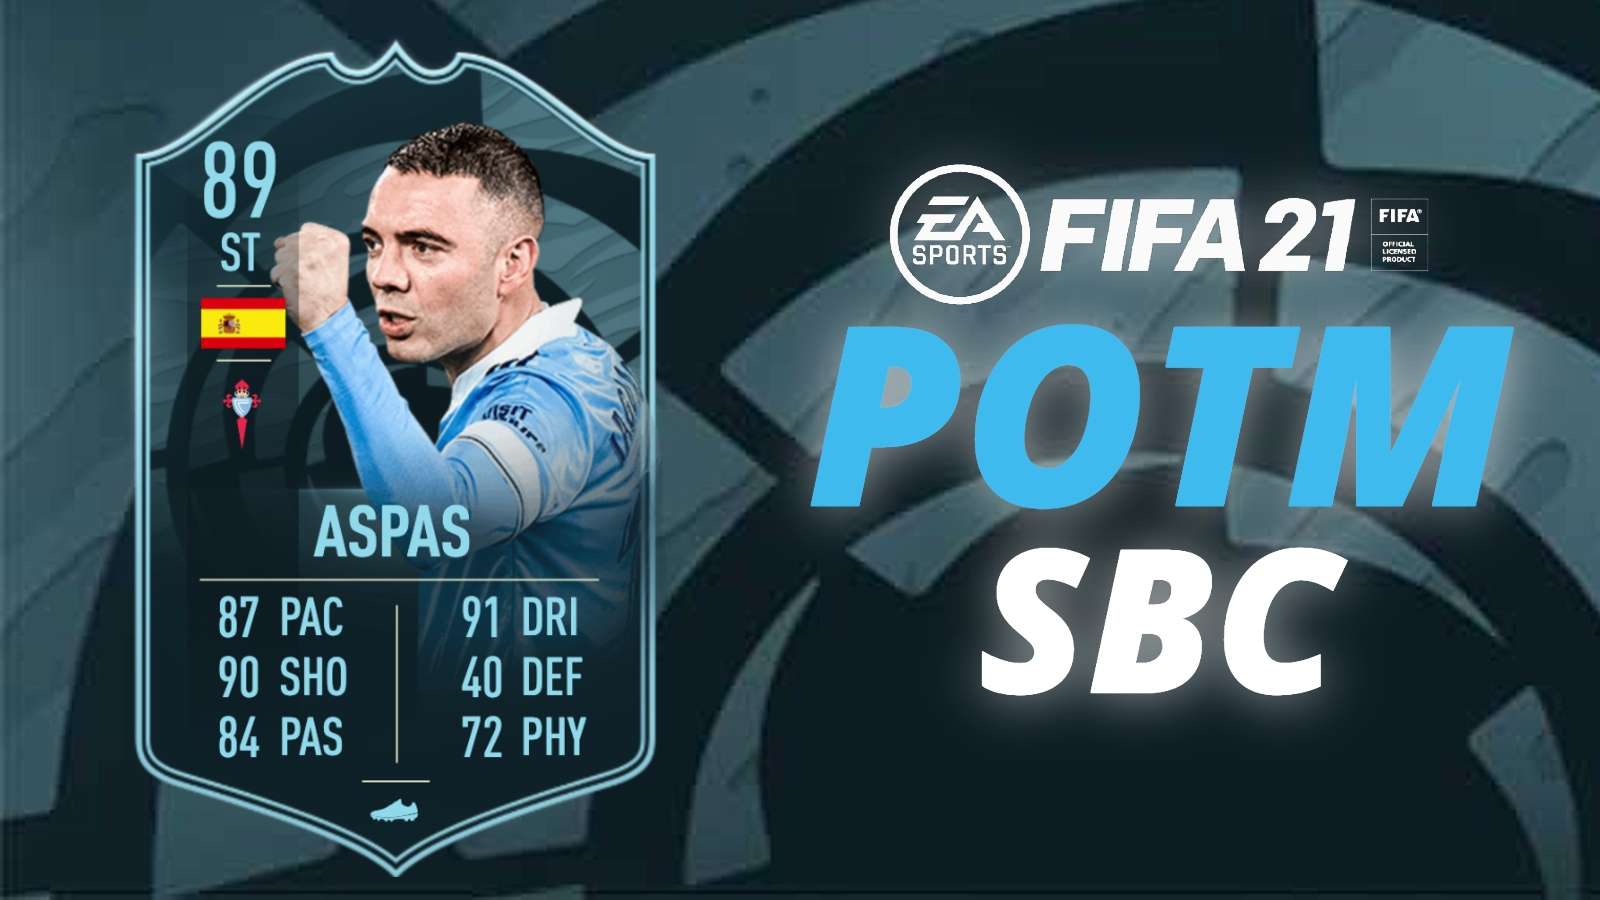 Iago Aspas POTM SBC FIFA 21